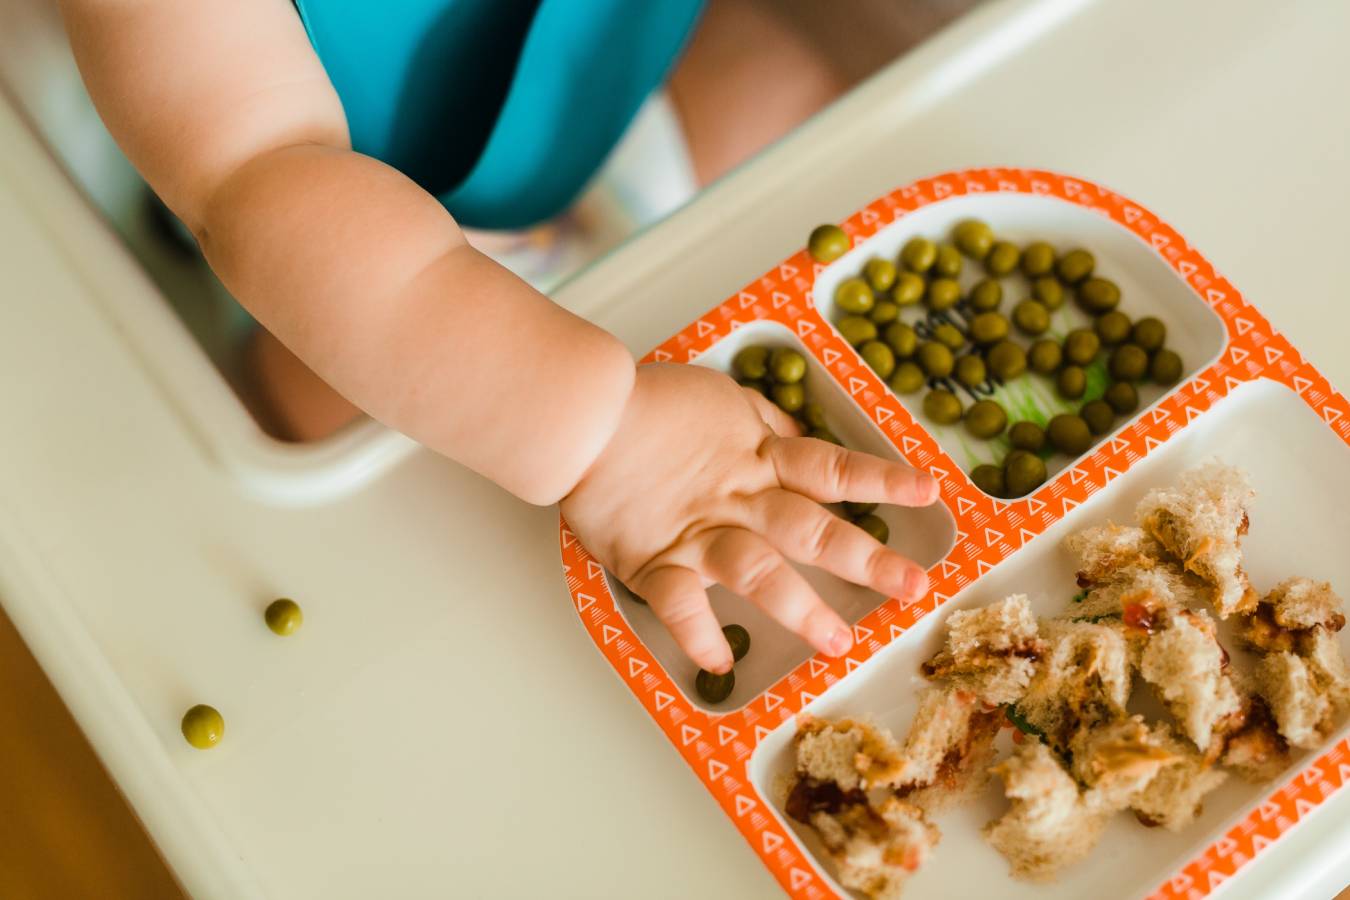 Szybka i zdrowa kolacja dla dziecka – przepisy.